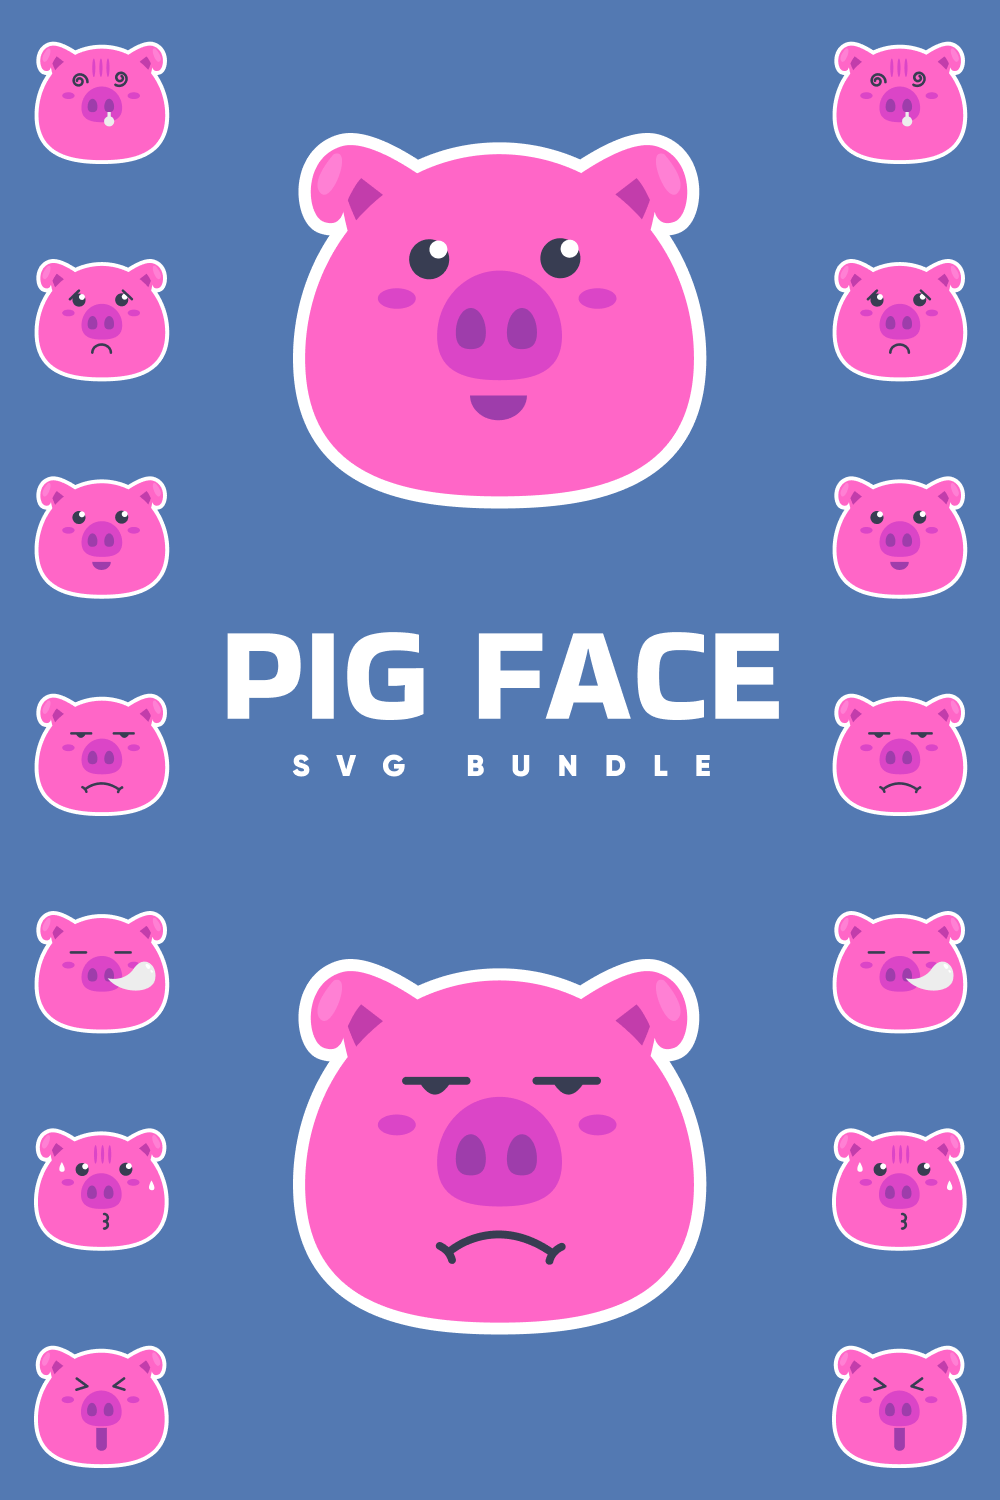 Pig face v2 SVG bundle.